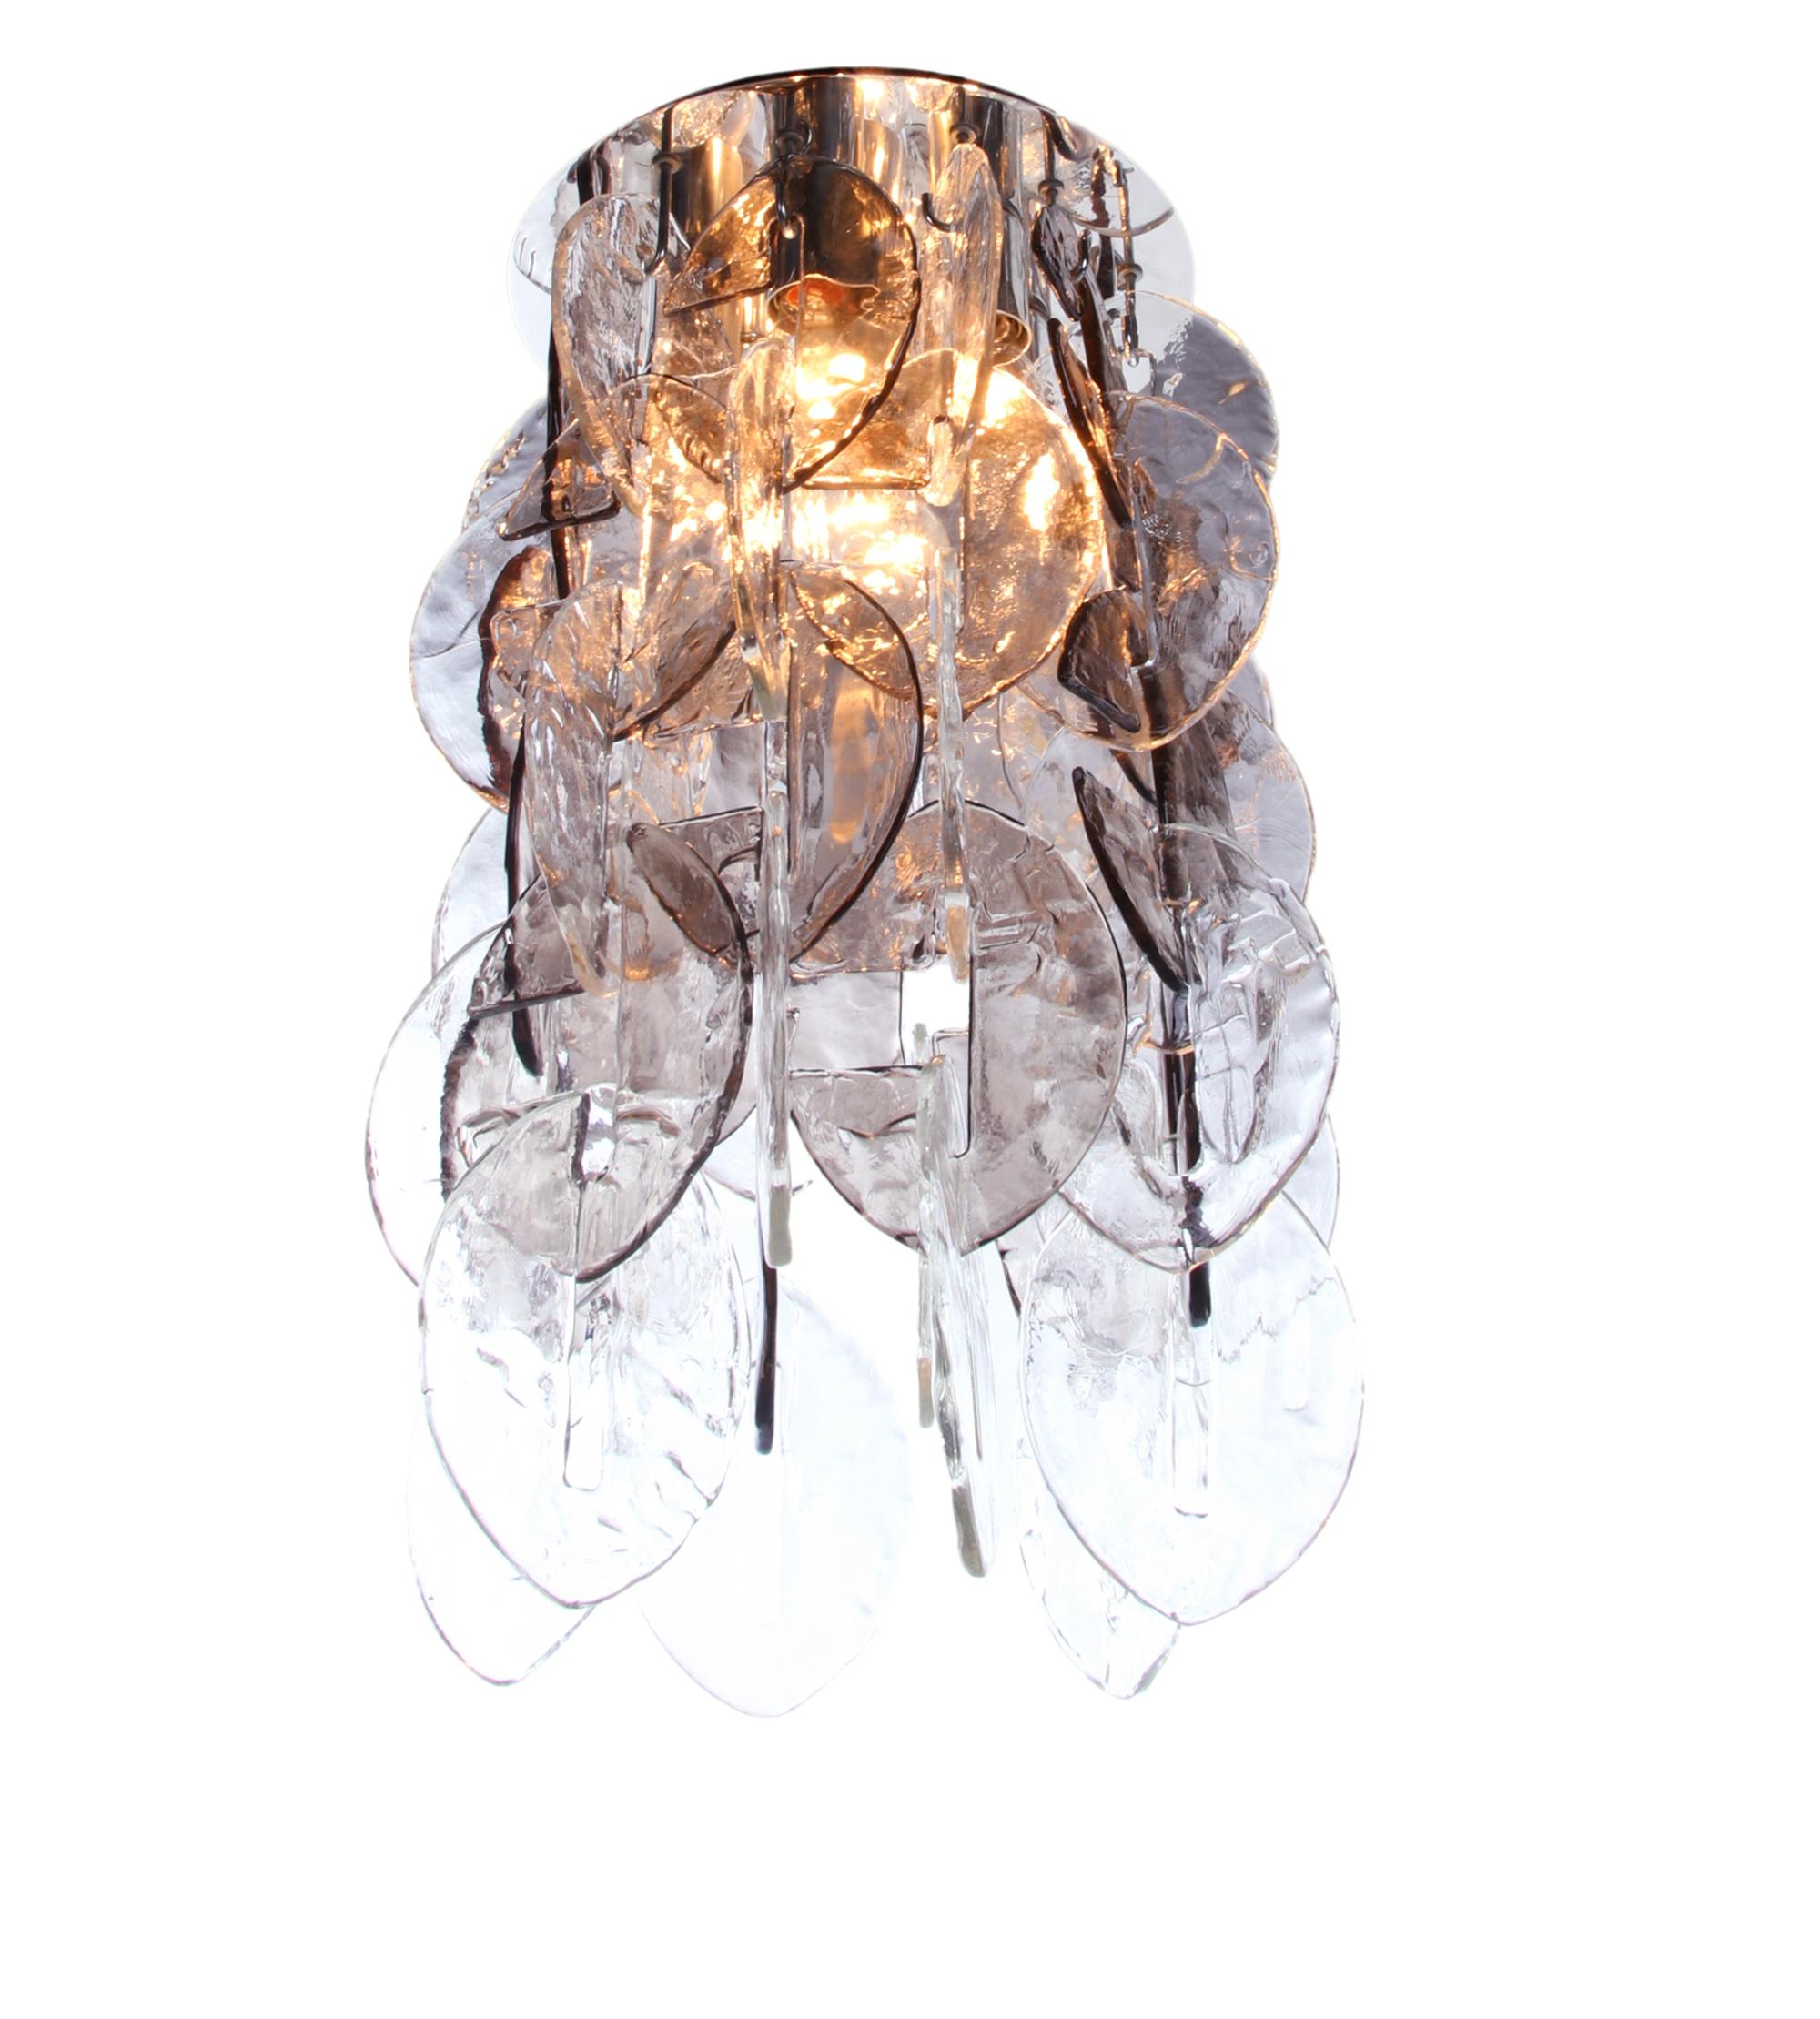 Elegant plafonnier en cascade avec 30 verres de Murano transparents et 24 ambrés fumés emboîtés sur une monture chromée. Usage intensif. Dispose de 7 prises. En très bon état. Donne une belle lumière. Un design du milieu du siècle étonnant. Gemme de